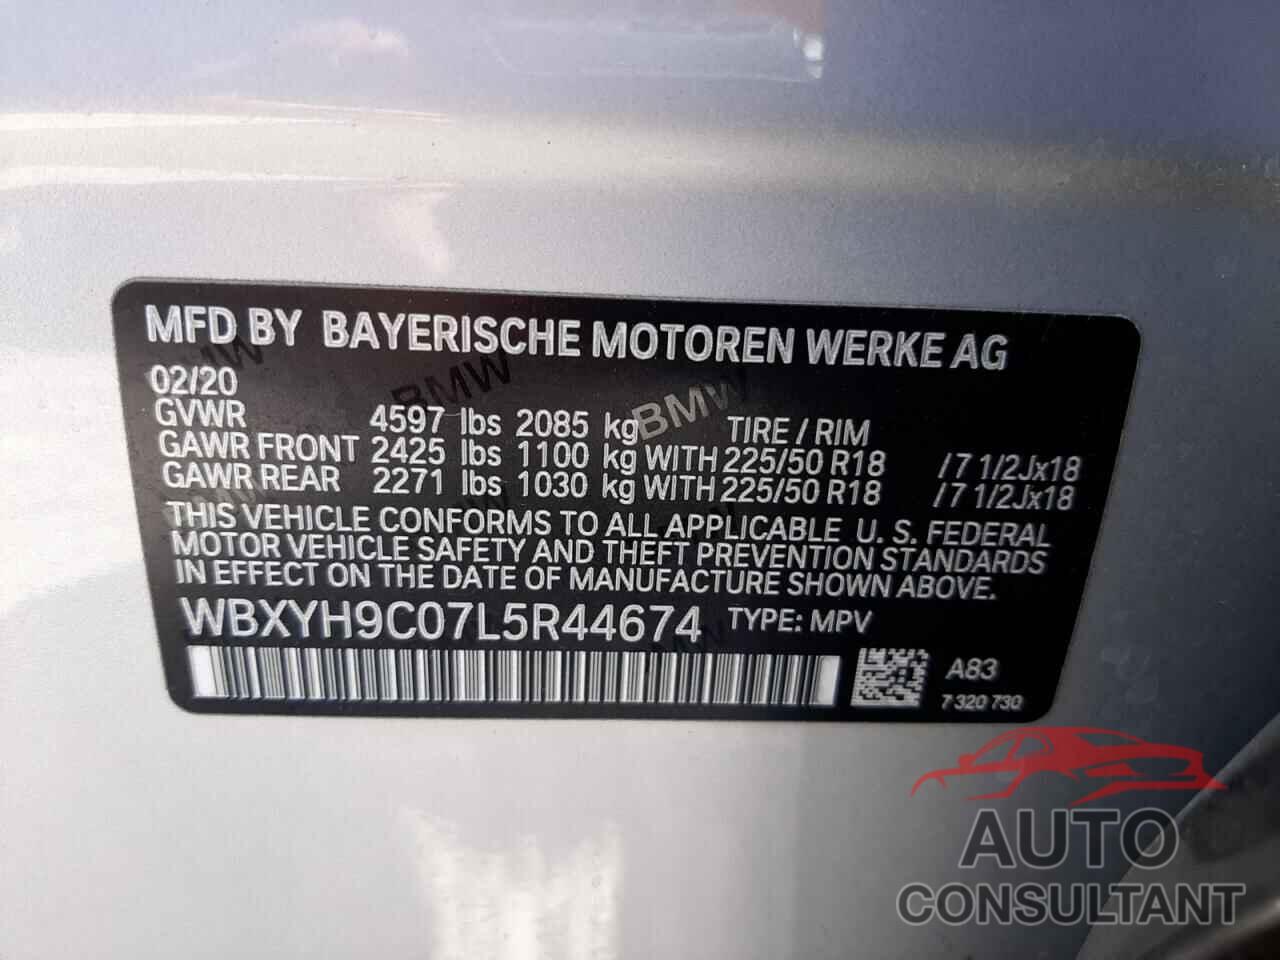 BMW X2 2020 - WBXYH9C07L5R44674